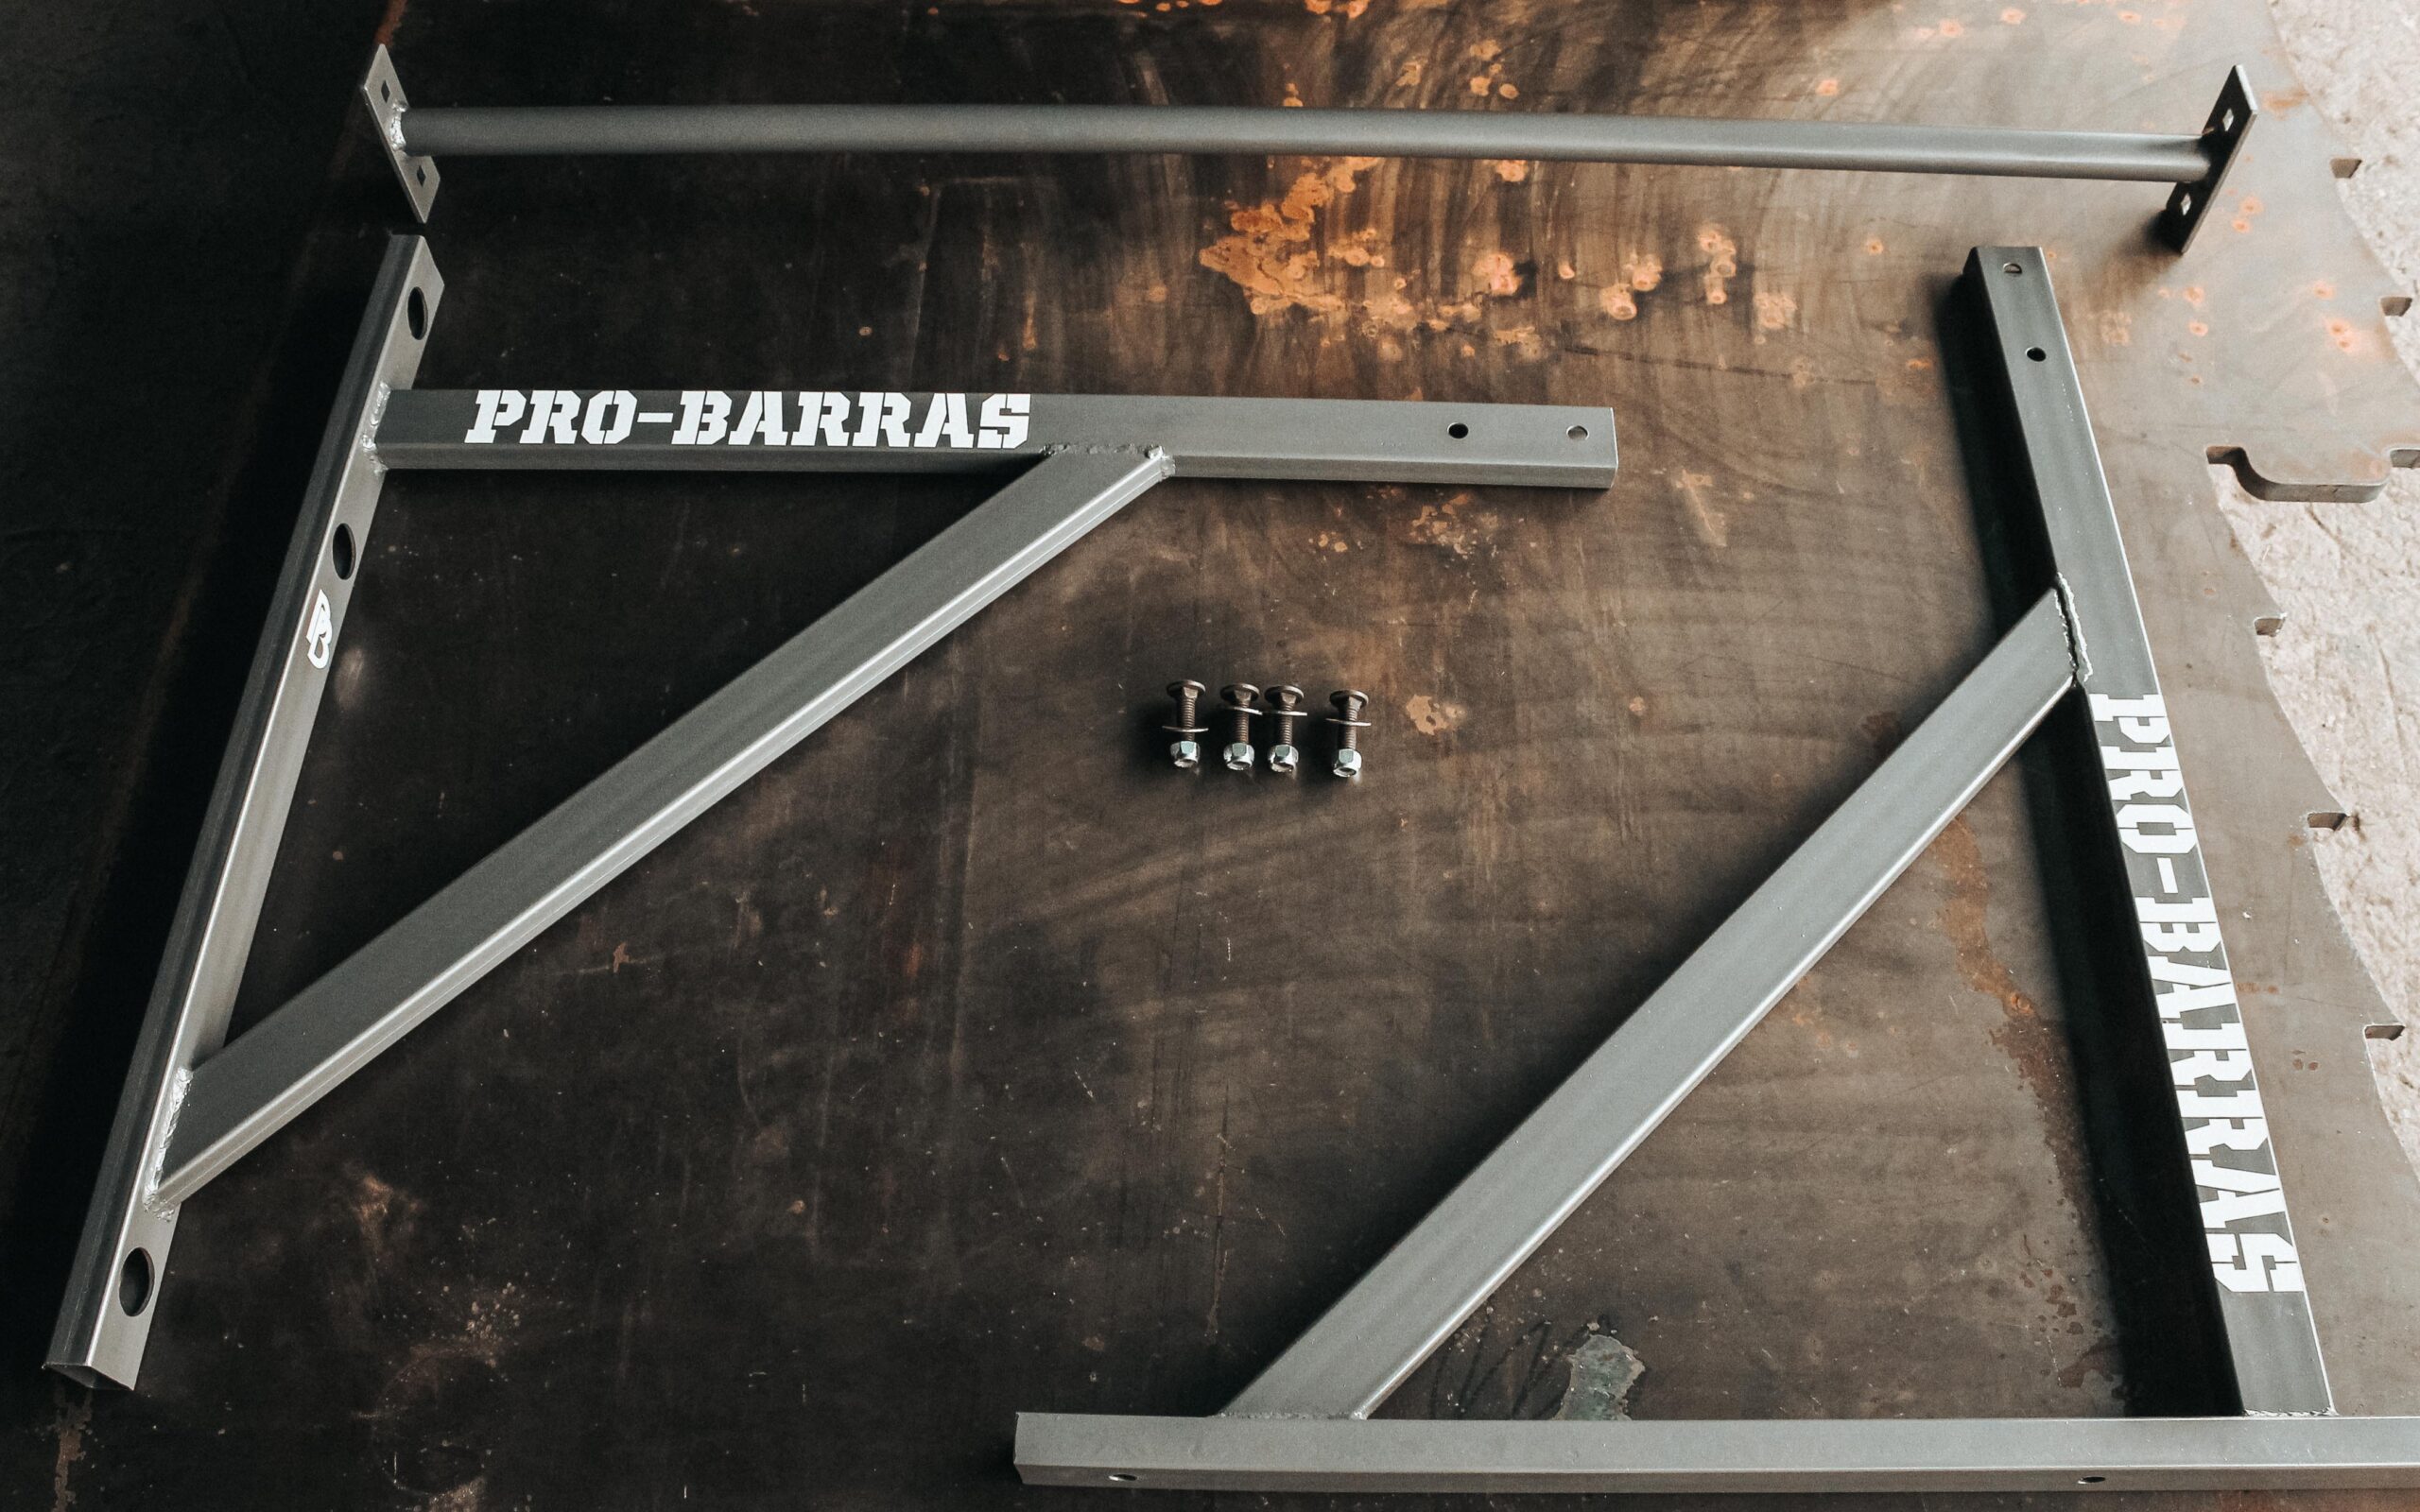 Barra para dominadas (fijación pared) - Pro-barras